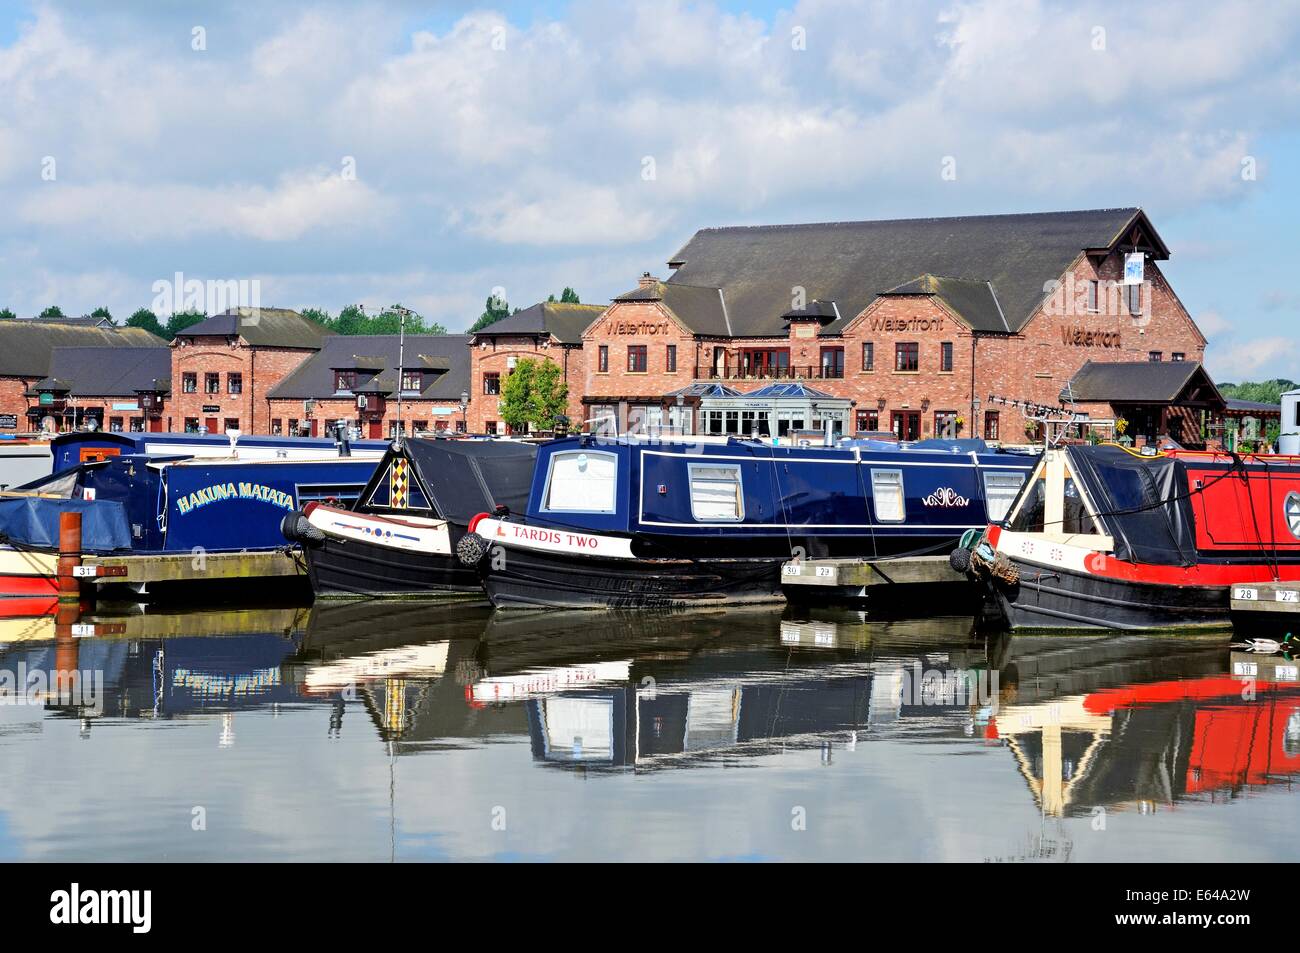 Narrowboats sur leurs amarres dans le bassin du canal, avec des magasins, bars et restaurants à l'arrière, Barton-under-Needwood. Banque D'Images